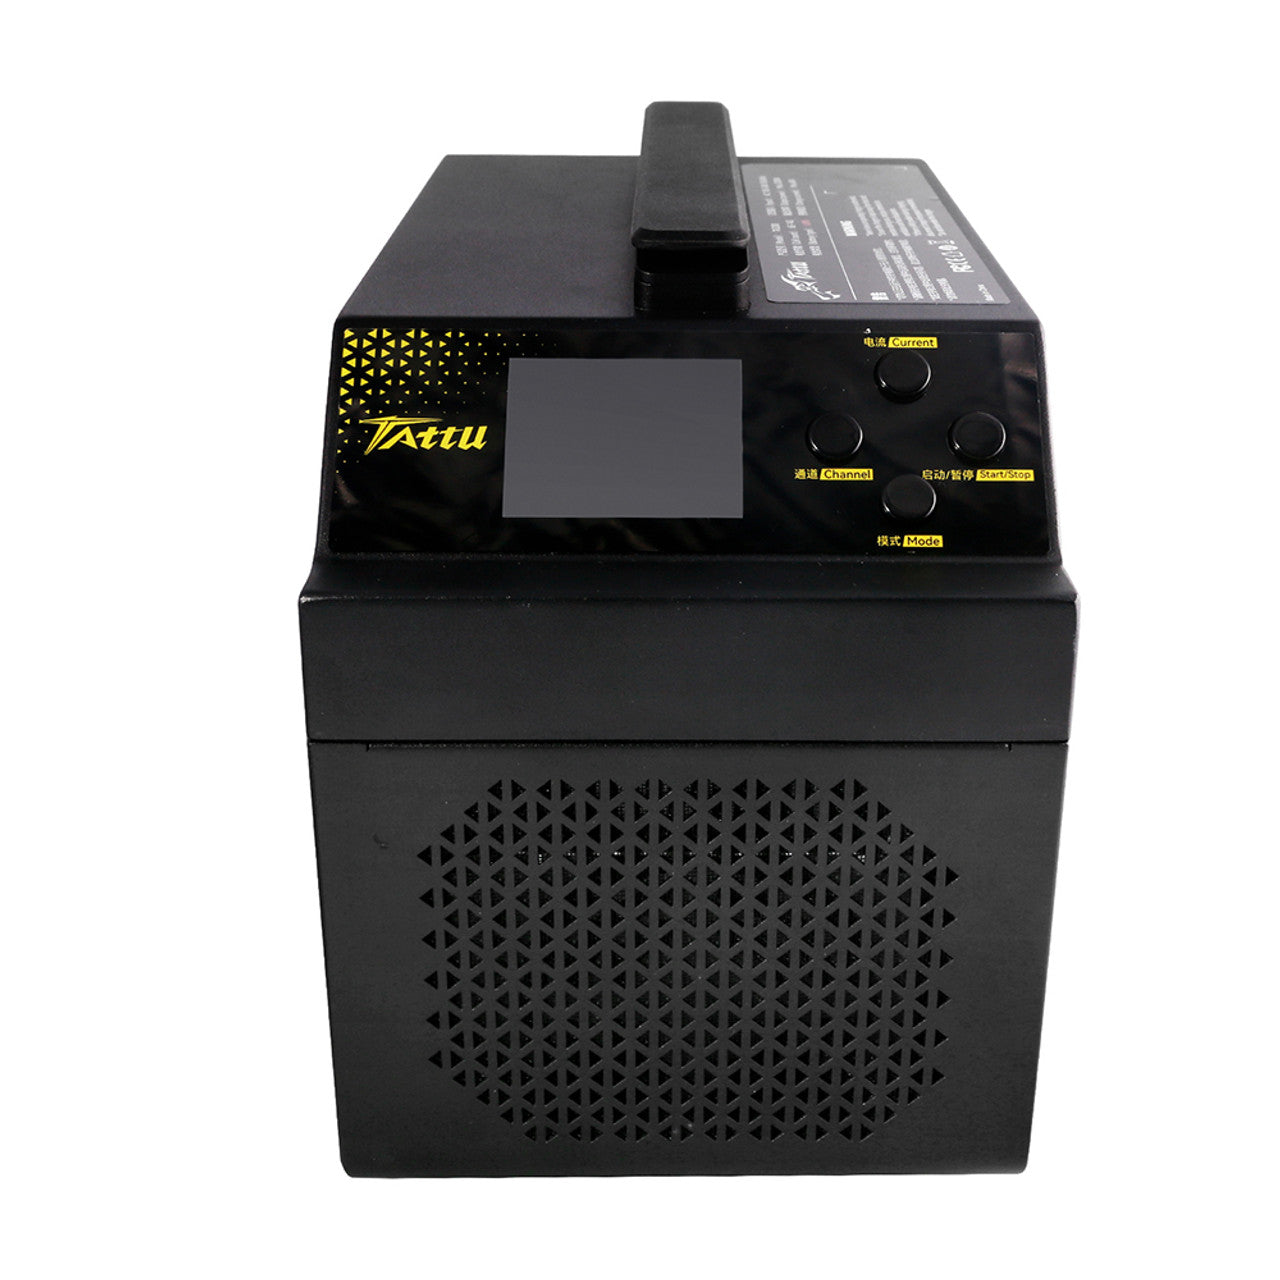 Зарядний пристрій Tattu TA3200 - двоканальний розумний зарядний пристрій 60 A/3200 Вт для 6S-14S LiPo акумулятора Tattu Smart Battery